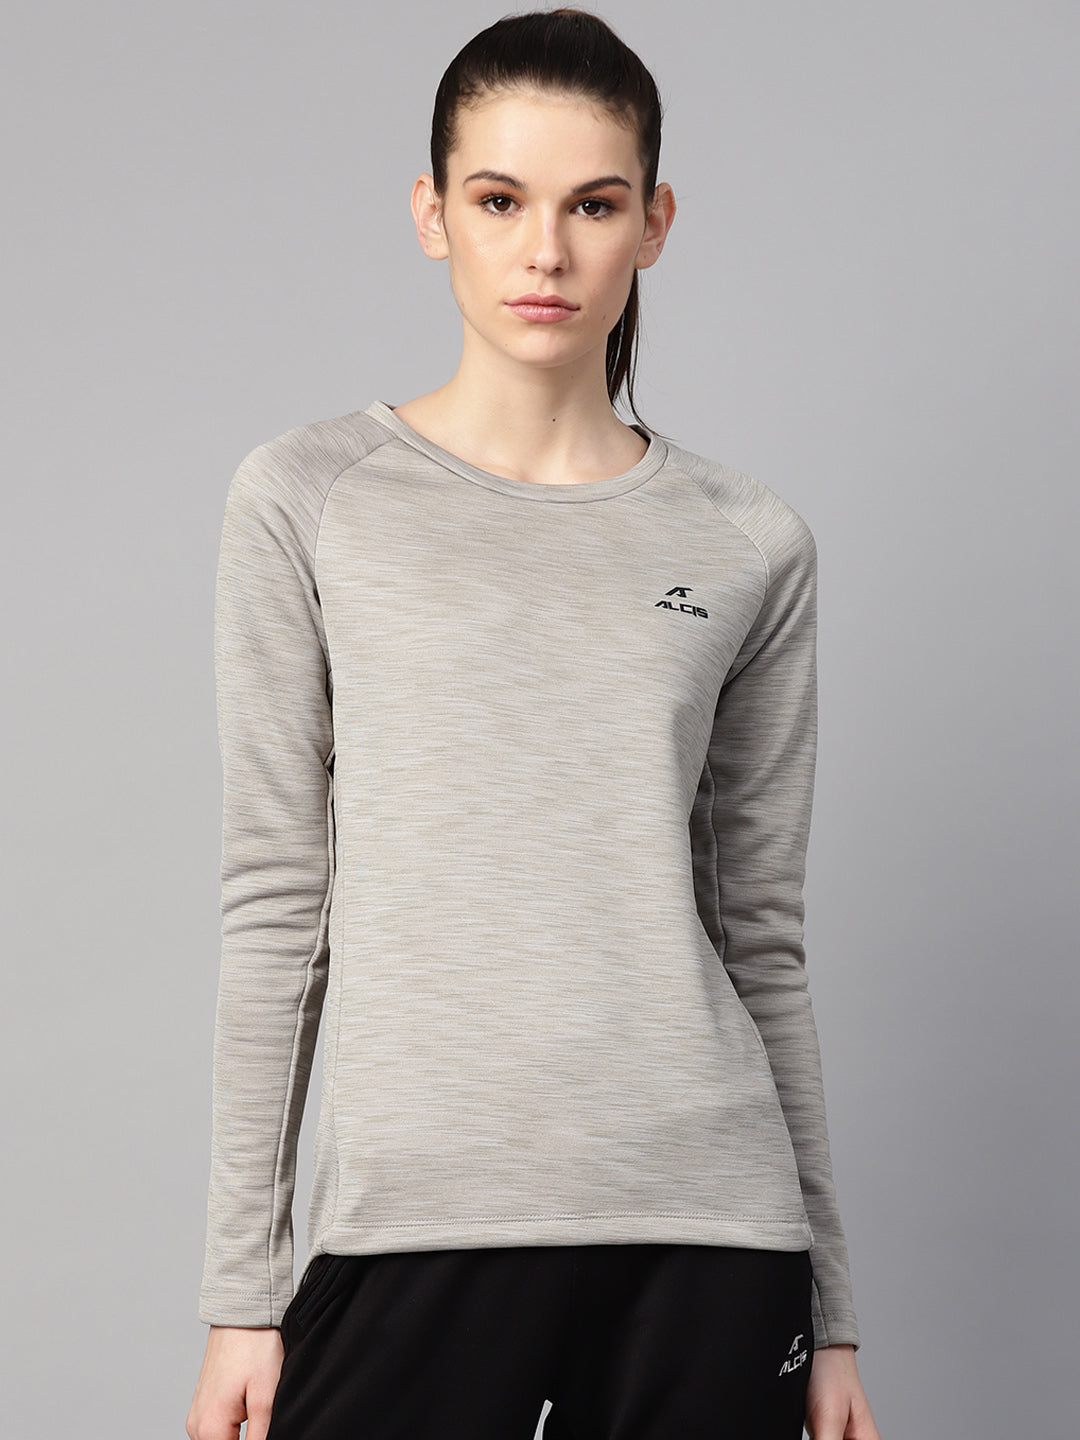 Alcis Women Grey Melange Solid Sweatshirt ALCSWTW5001-S